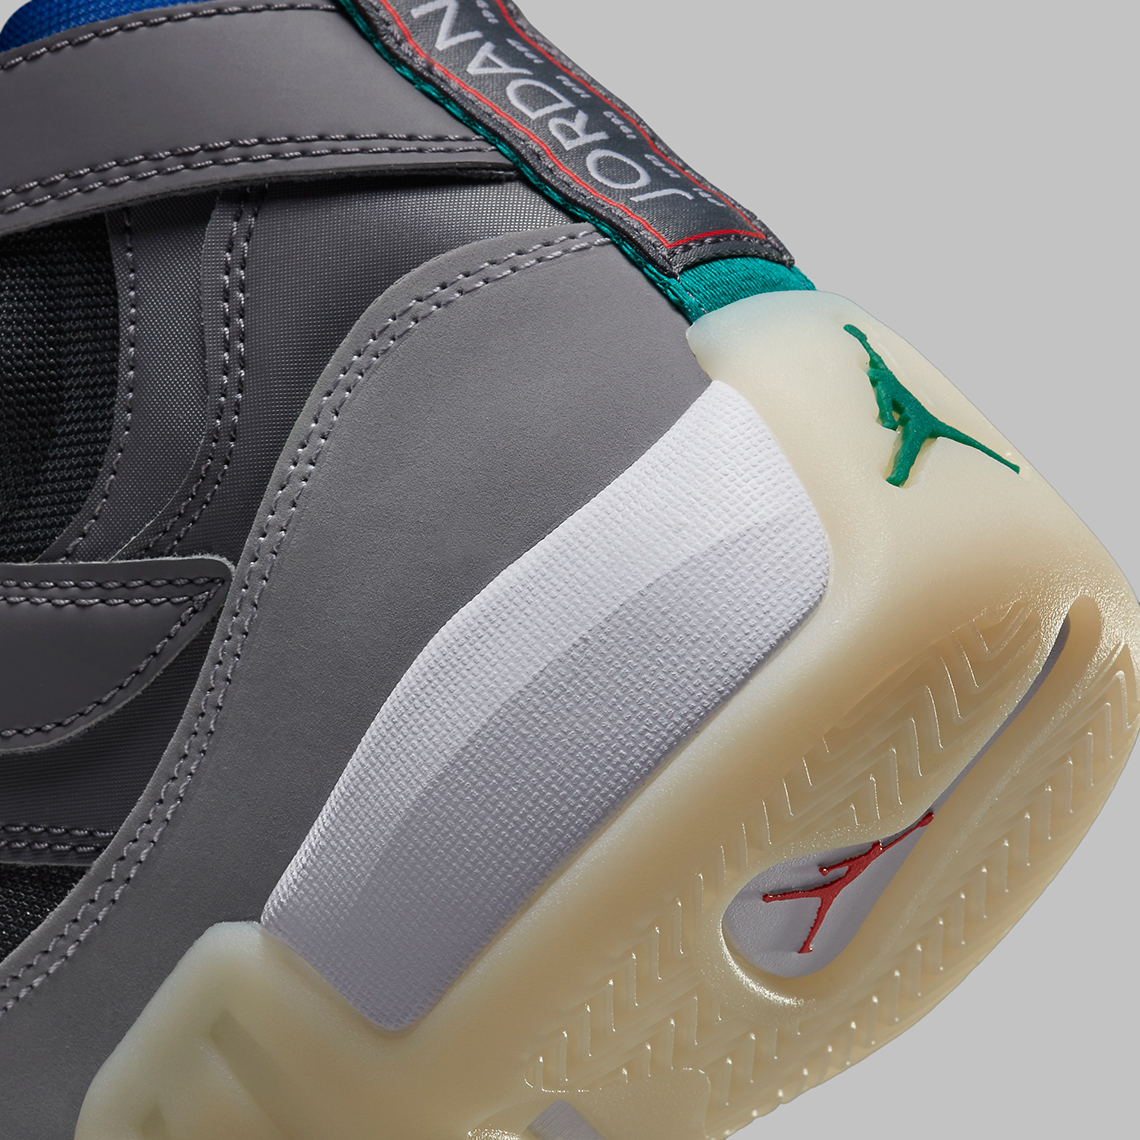 high-top Air Jordan 1 Retro Fearless sneakers